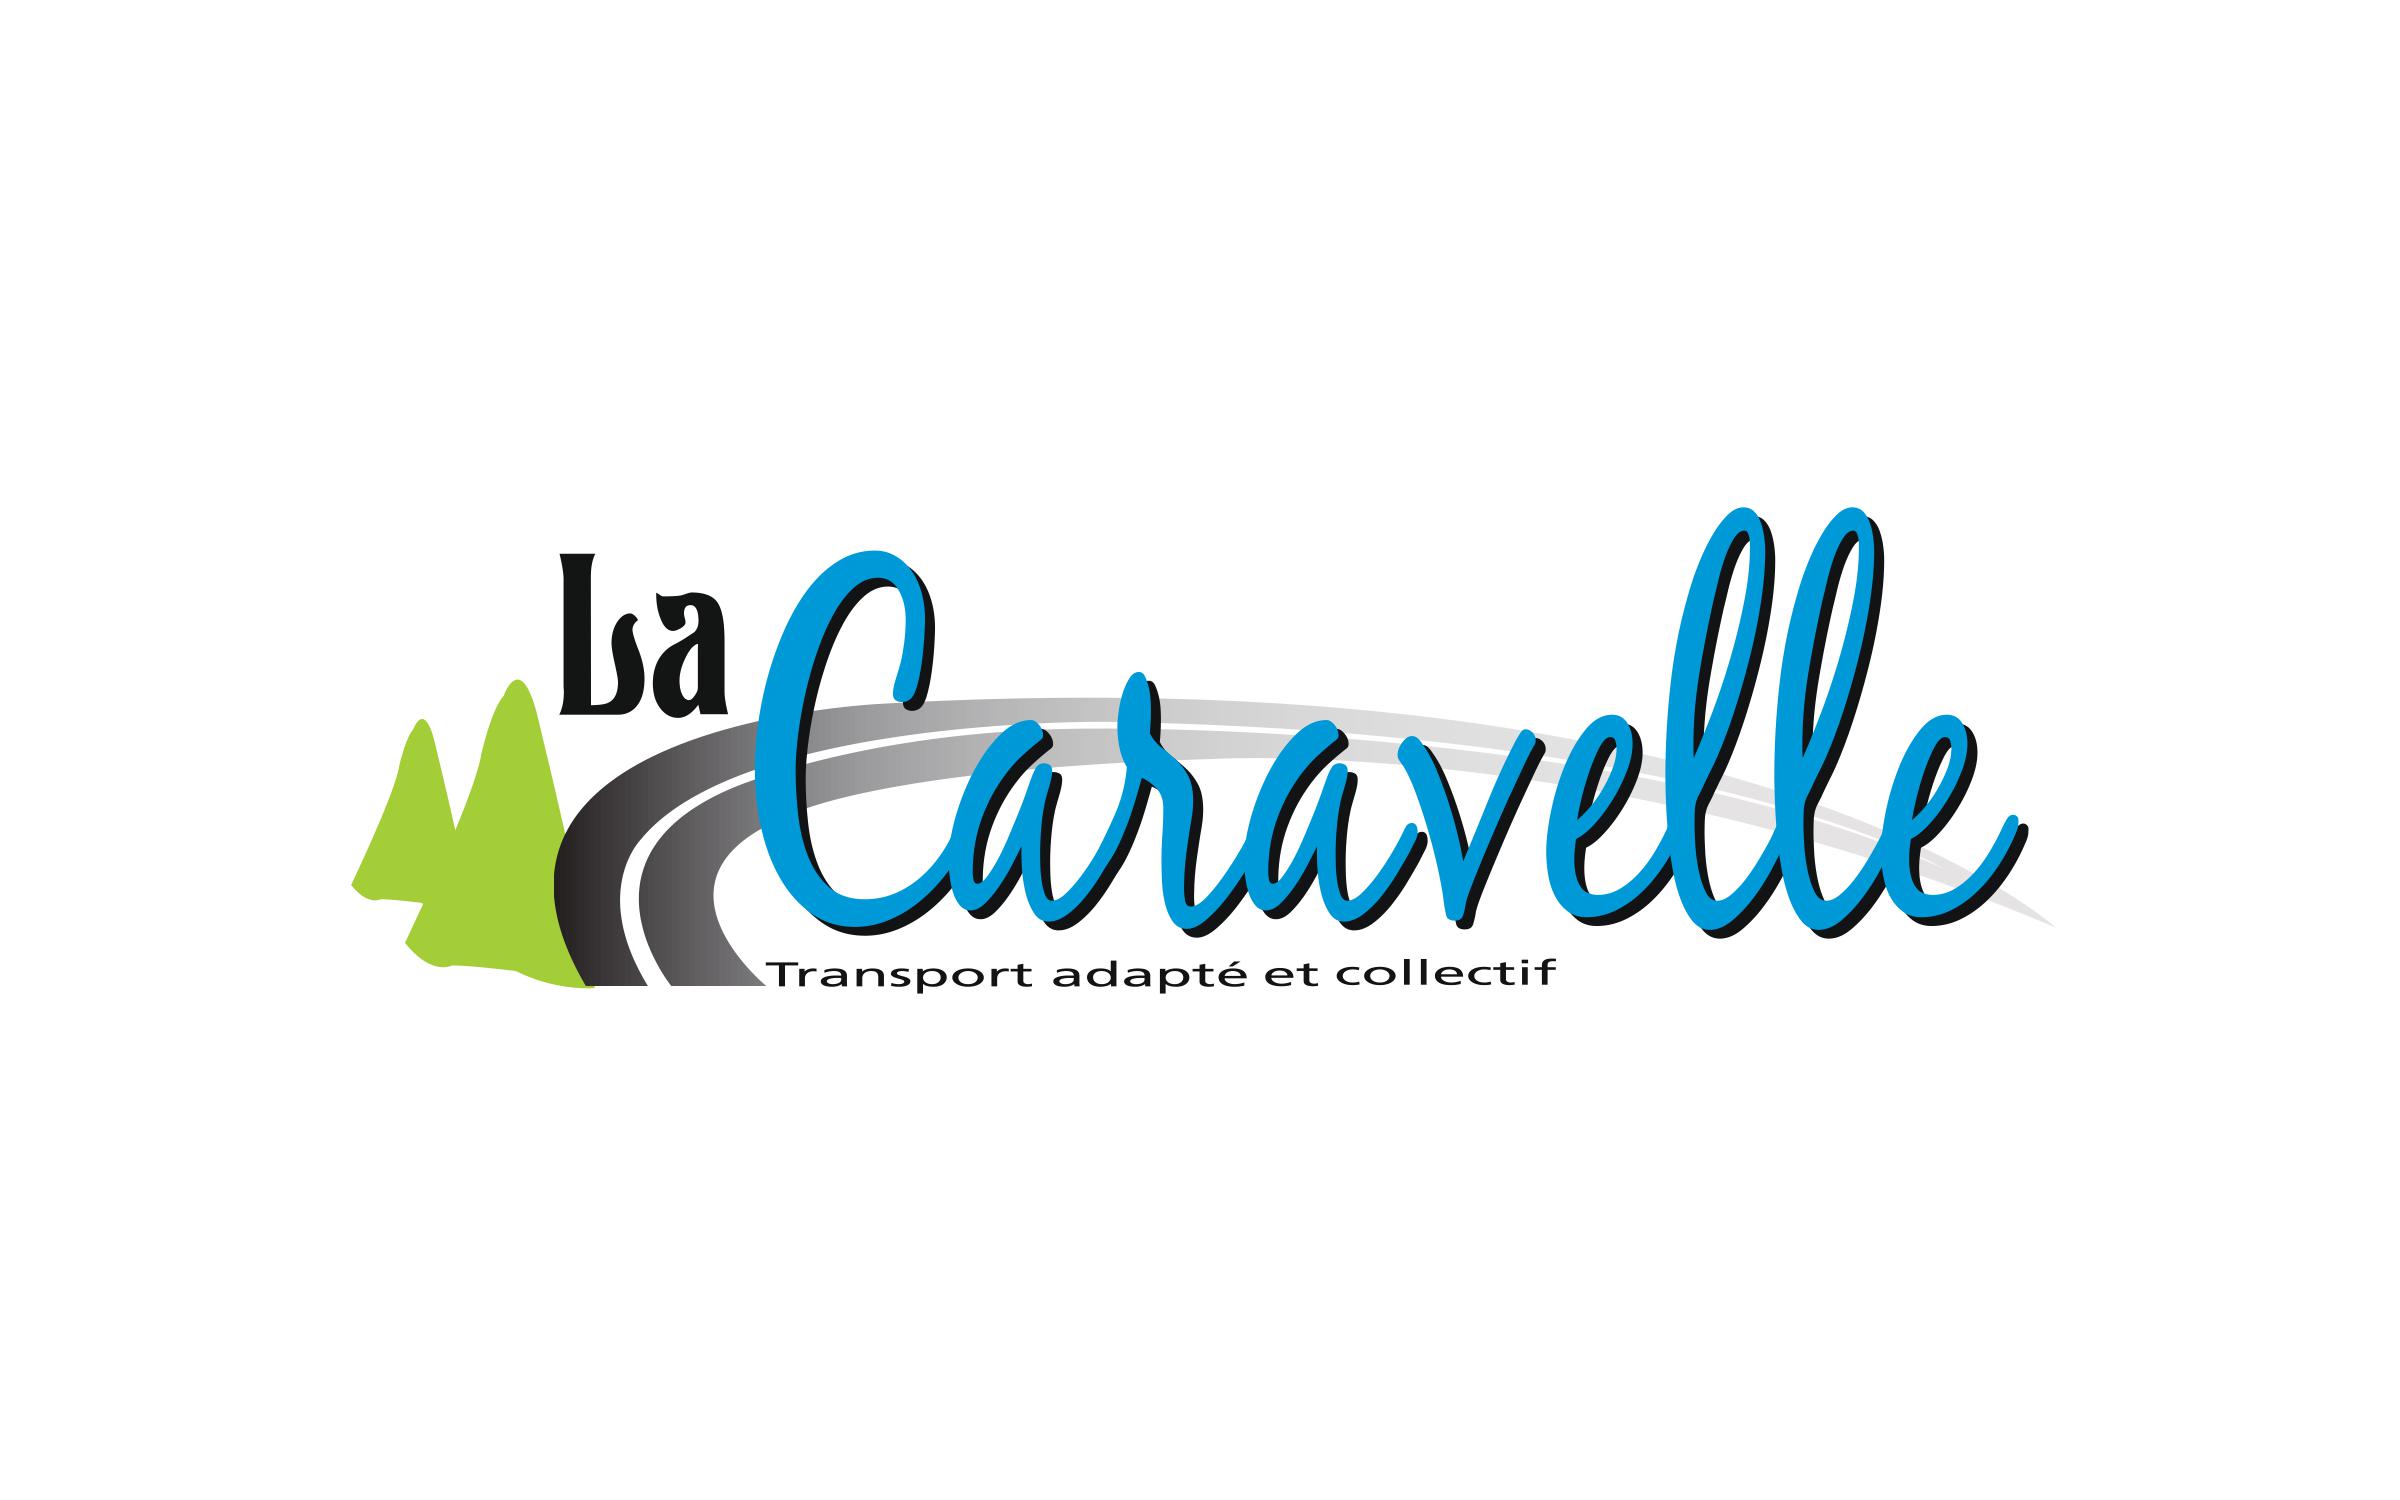 Transport adapté et collectif La Caravelle inc.